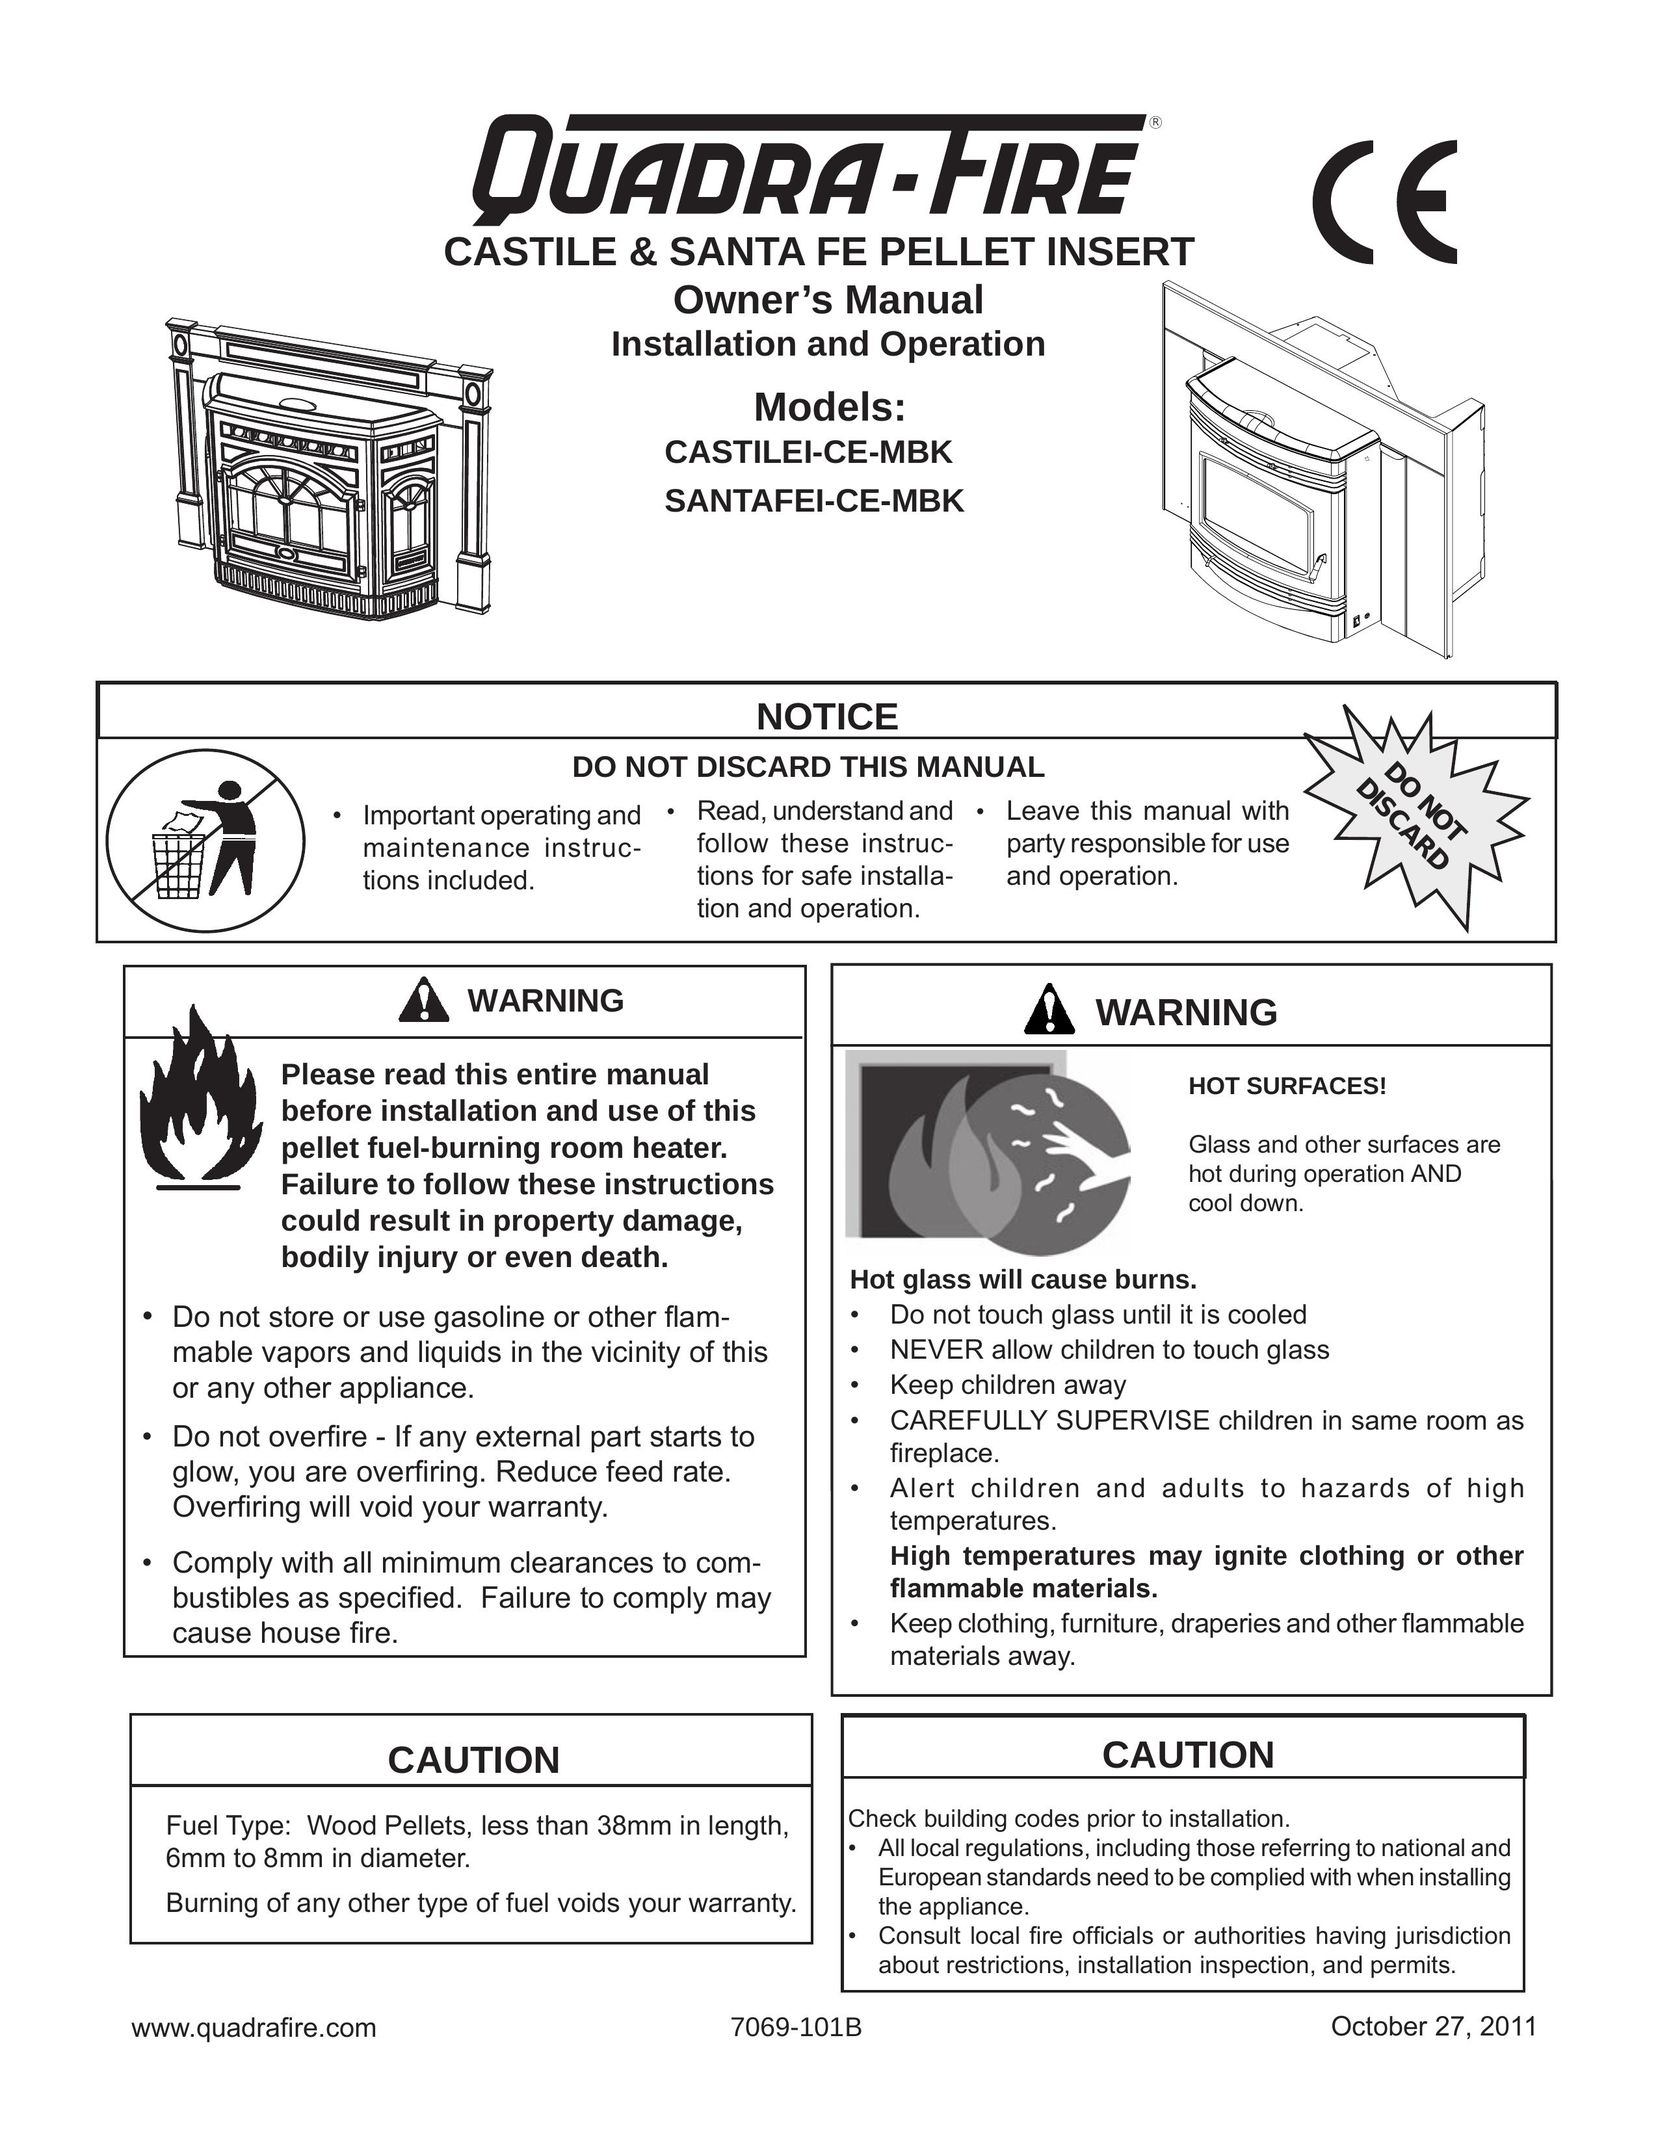 Quadra-Fire SANTAFEI-CE-MBK Indoor Fireplace User Manual